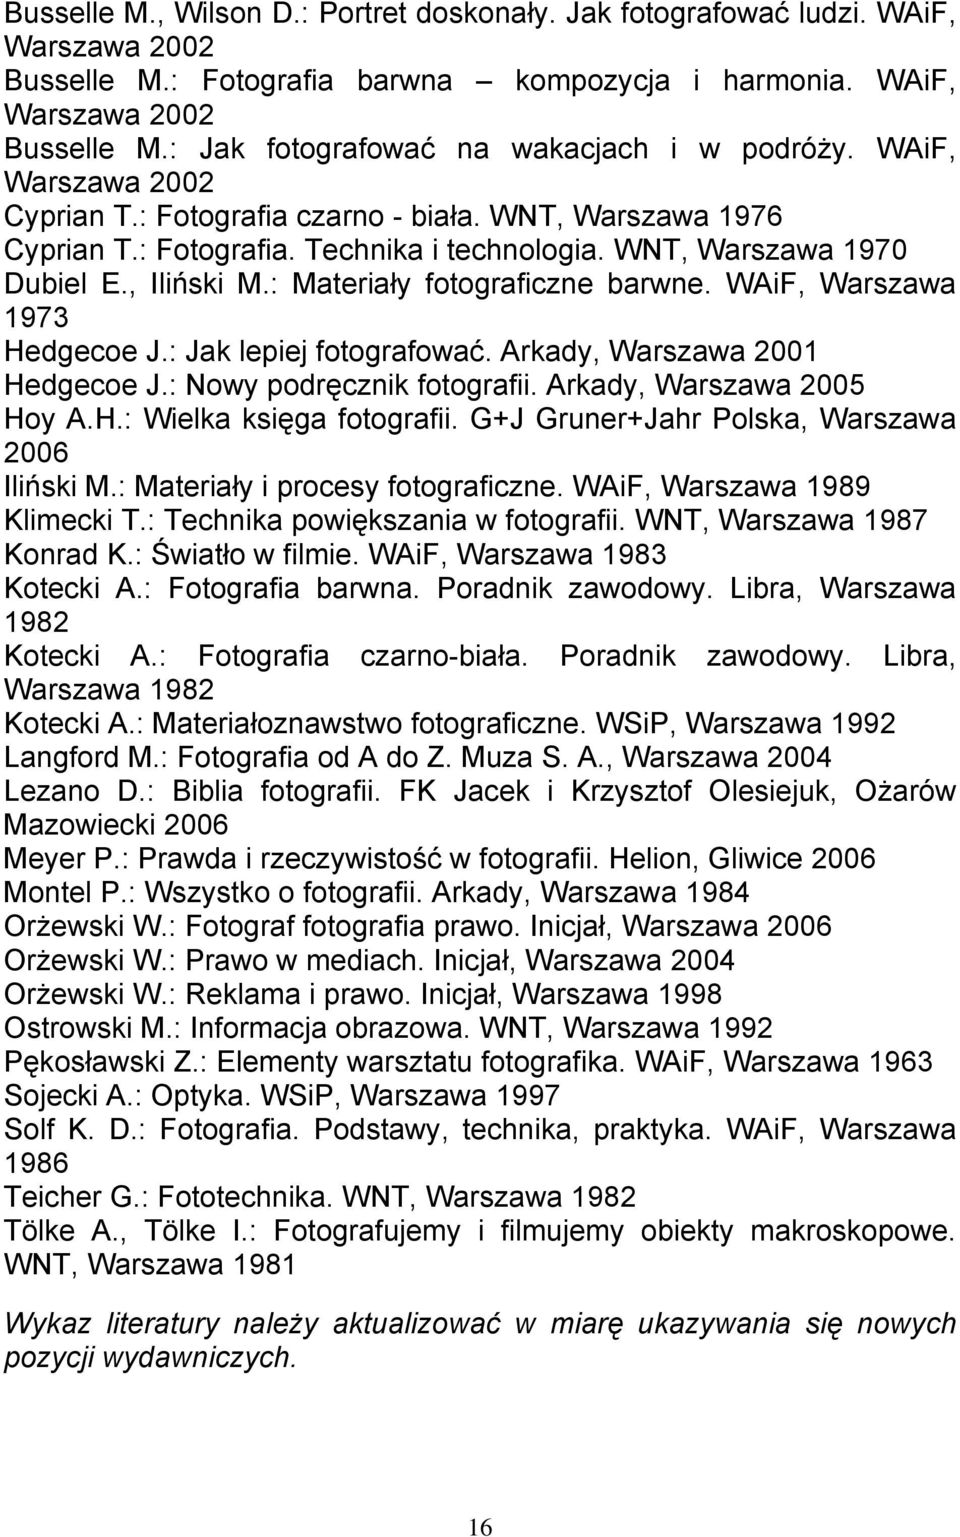 WAiF, Warszawa 1973 Hedgecoe J.: Jak lepiej fotografować. Arkady, Warszawa 2001 Hedgecoe J.: Nowy podręcznik fotografii. Arkady, Warszawa 2005 Hoy A.H.: Wielka księga fotografii.